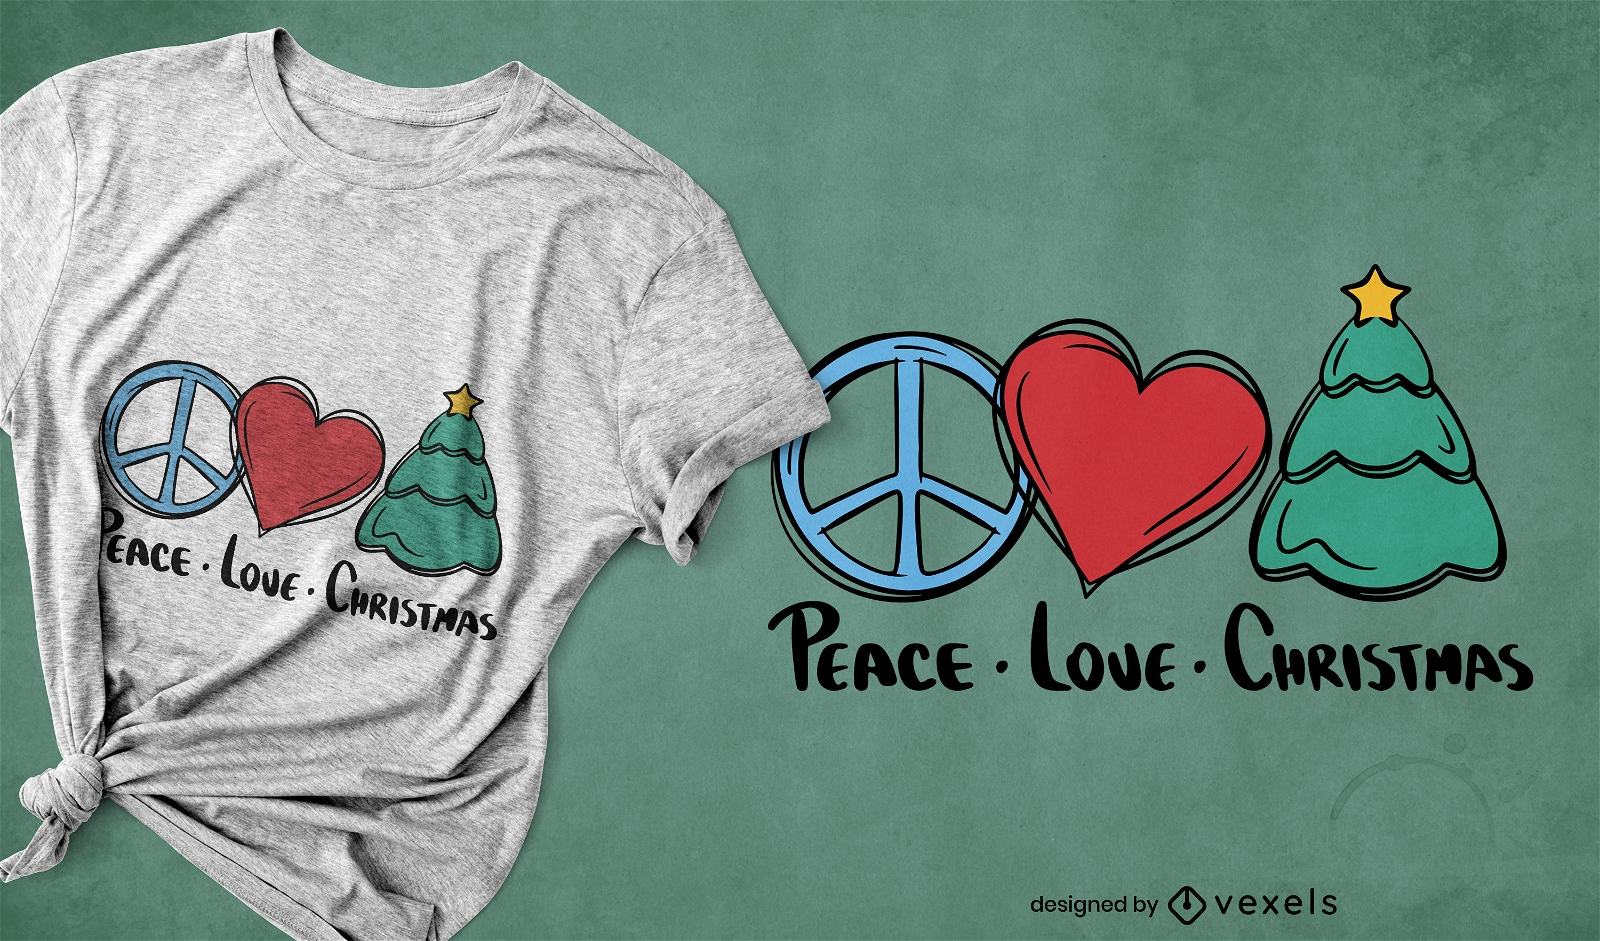 Dise?o de camiseta de paz, amor y navidad.